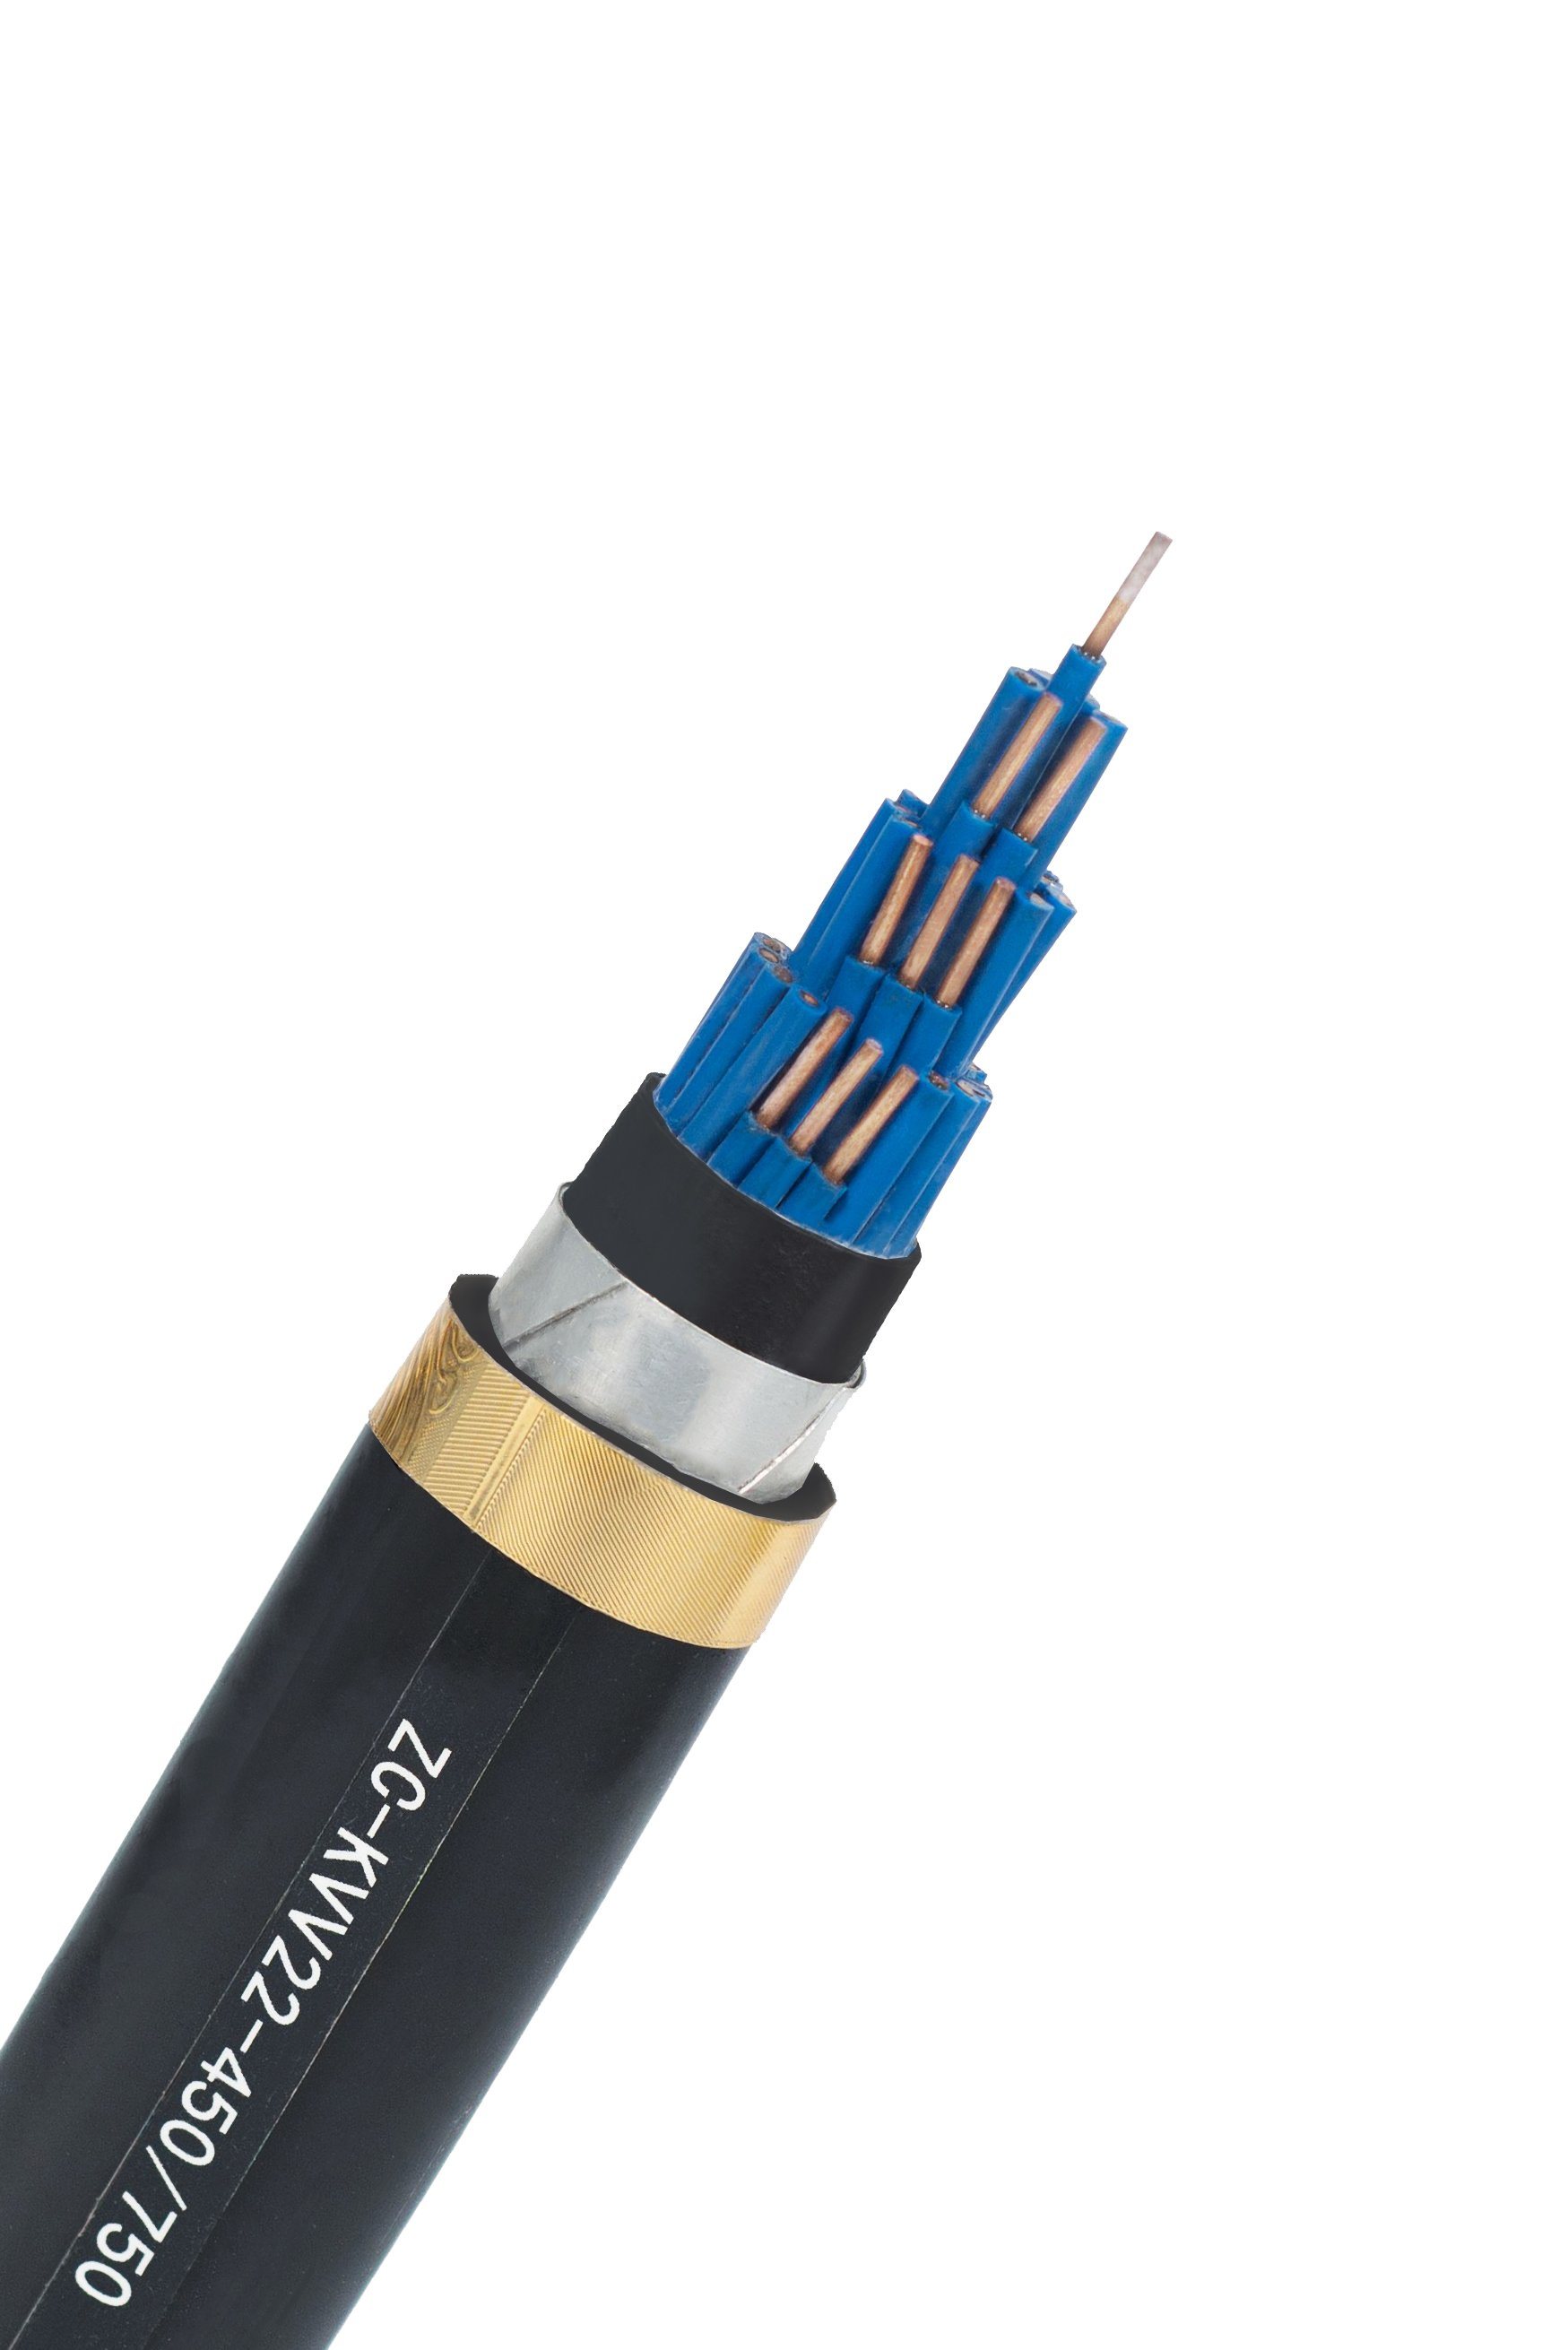 
                Cable de datos flexible estándar europeo Liyy 2 3 4 5 0,3 0,75 1,5 núcleo 6 7 8 10 pies cuadrados mm Cable de control de señal de comunicación electrónica y eléctrica
            